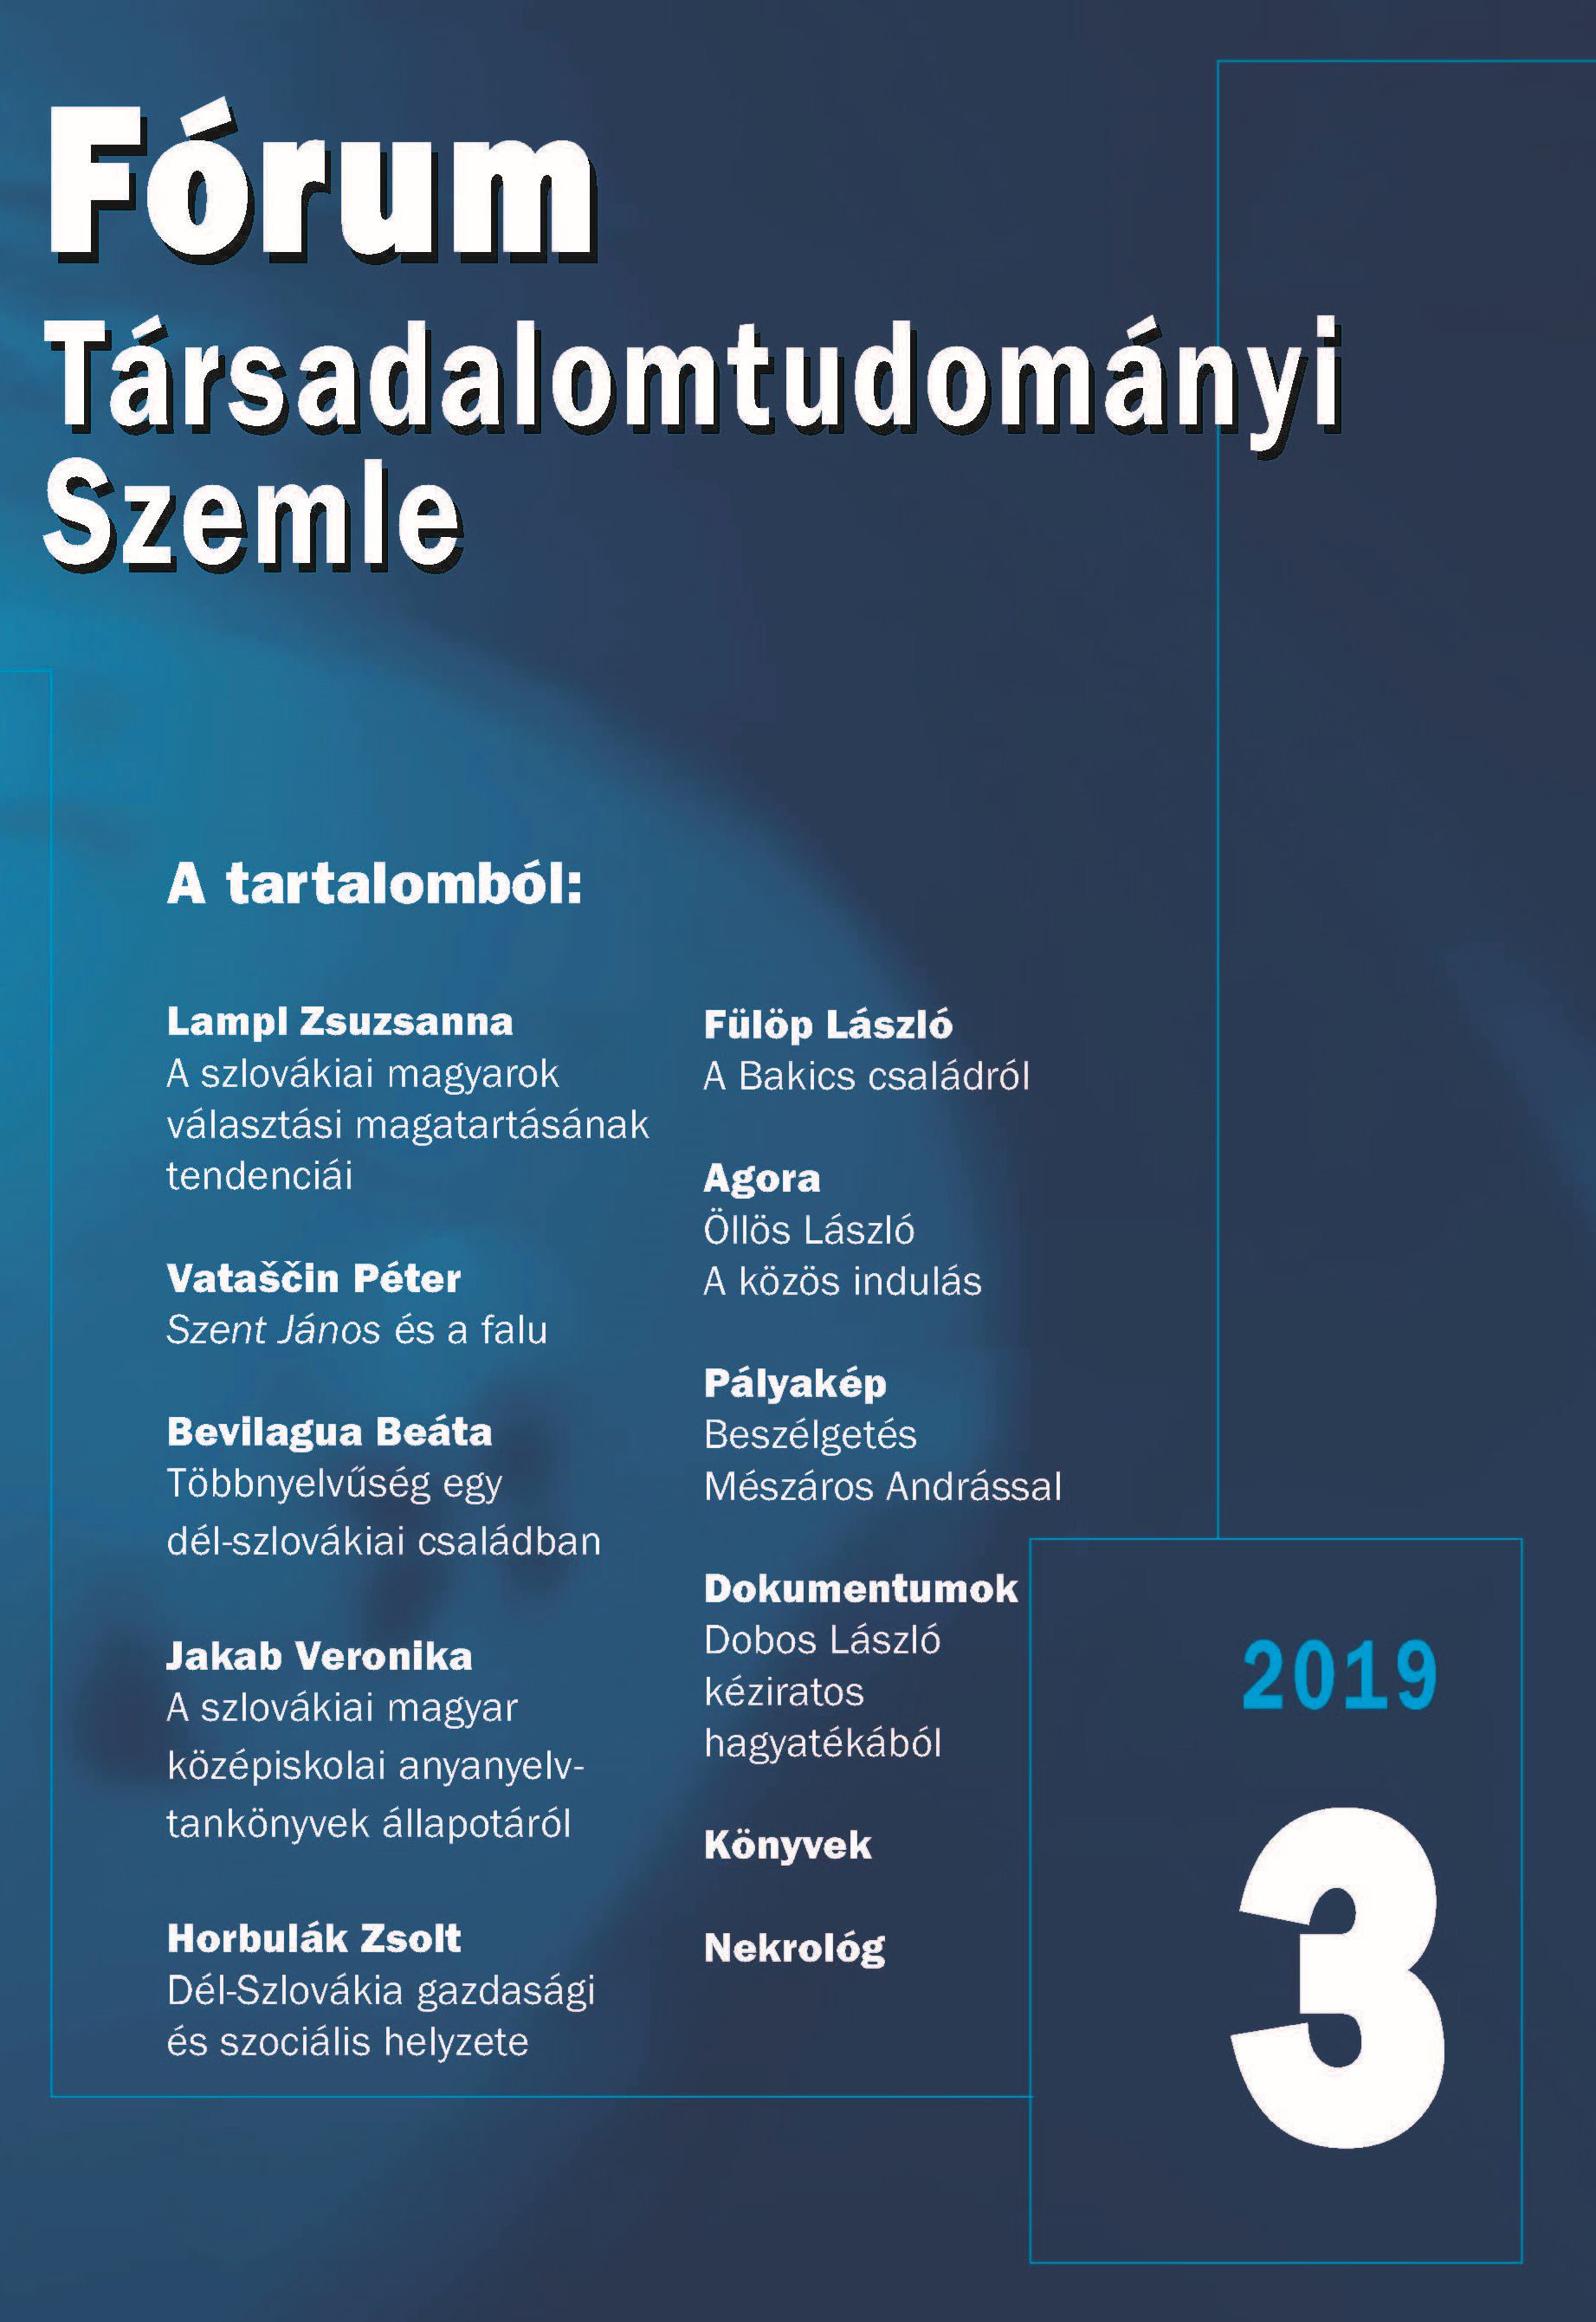 A szlovákiai magyar középiskolai anyanyelvtankönyvek állapotáról